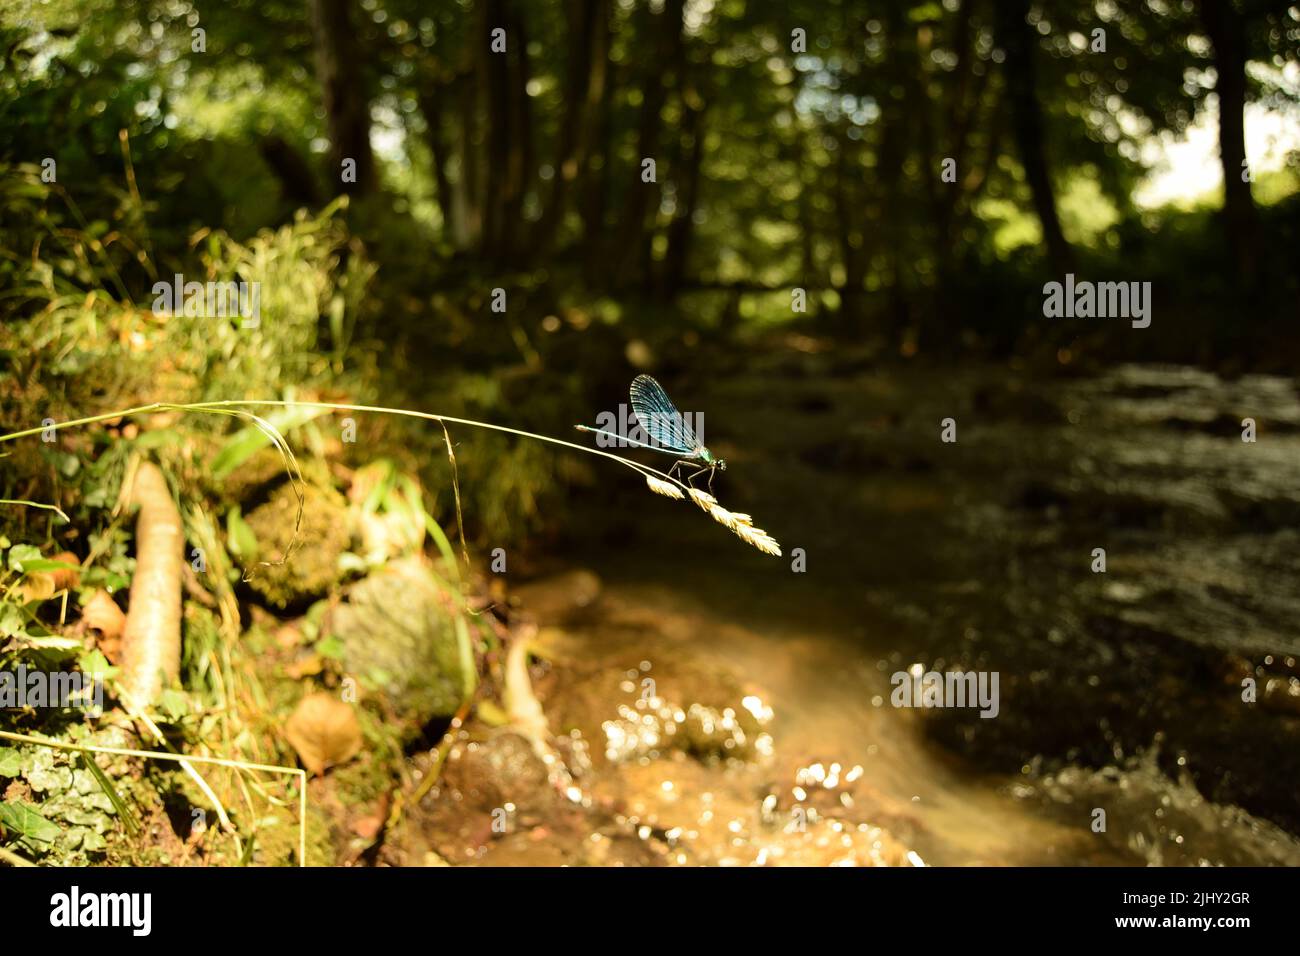 Una libellula blu su un gambo secco di erba con semi, di fronte a uno sfondo bokeh di verde, alberi e un flusso di ruscello in una giornata di sole – closeup Foto Stock